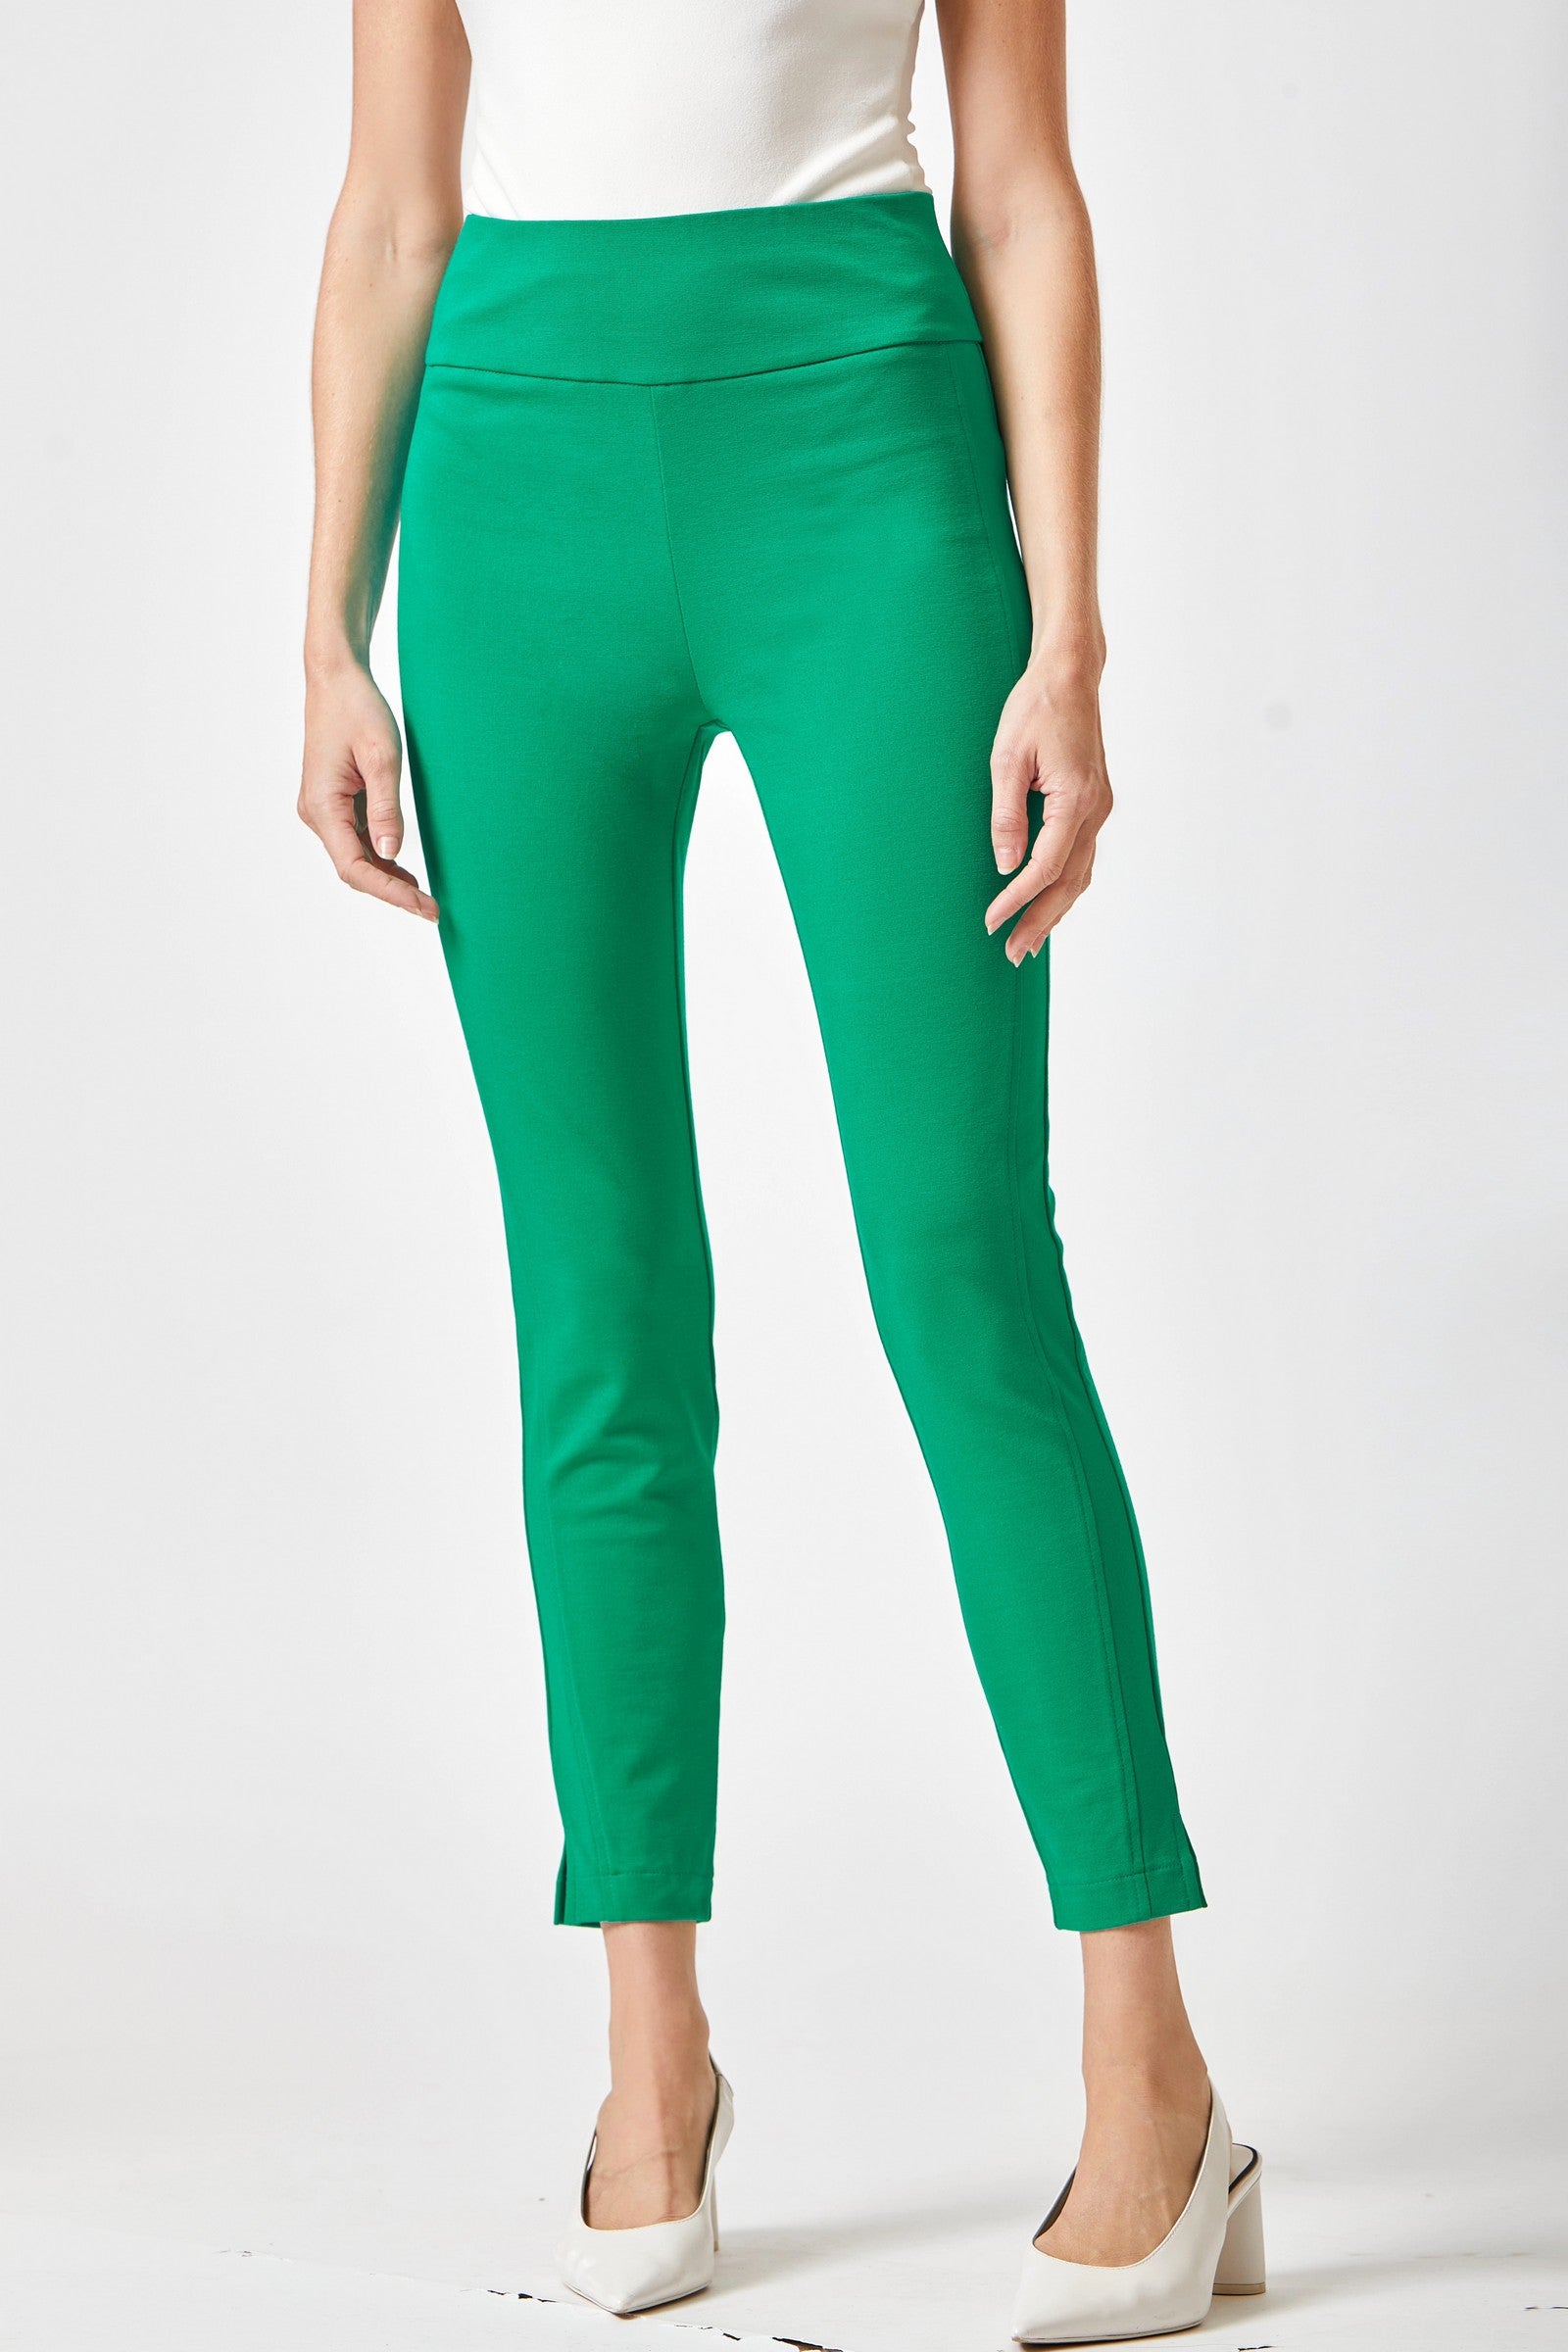 Dear Scarlett Magic Skinny Pants in Twelve Colors 28 inch Inseam Final Sale Kelly Green Ave Shops